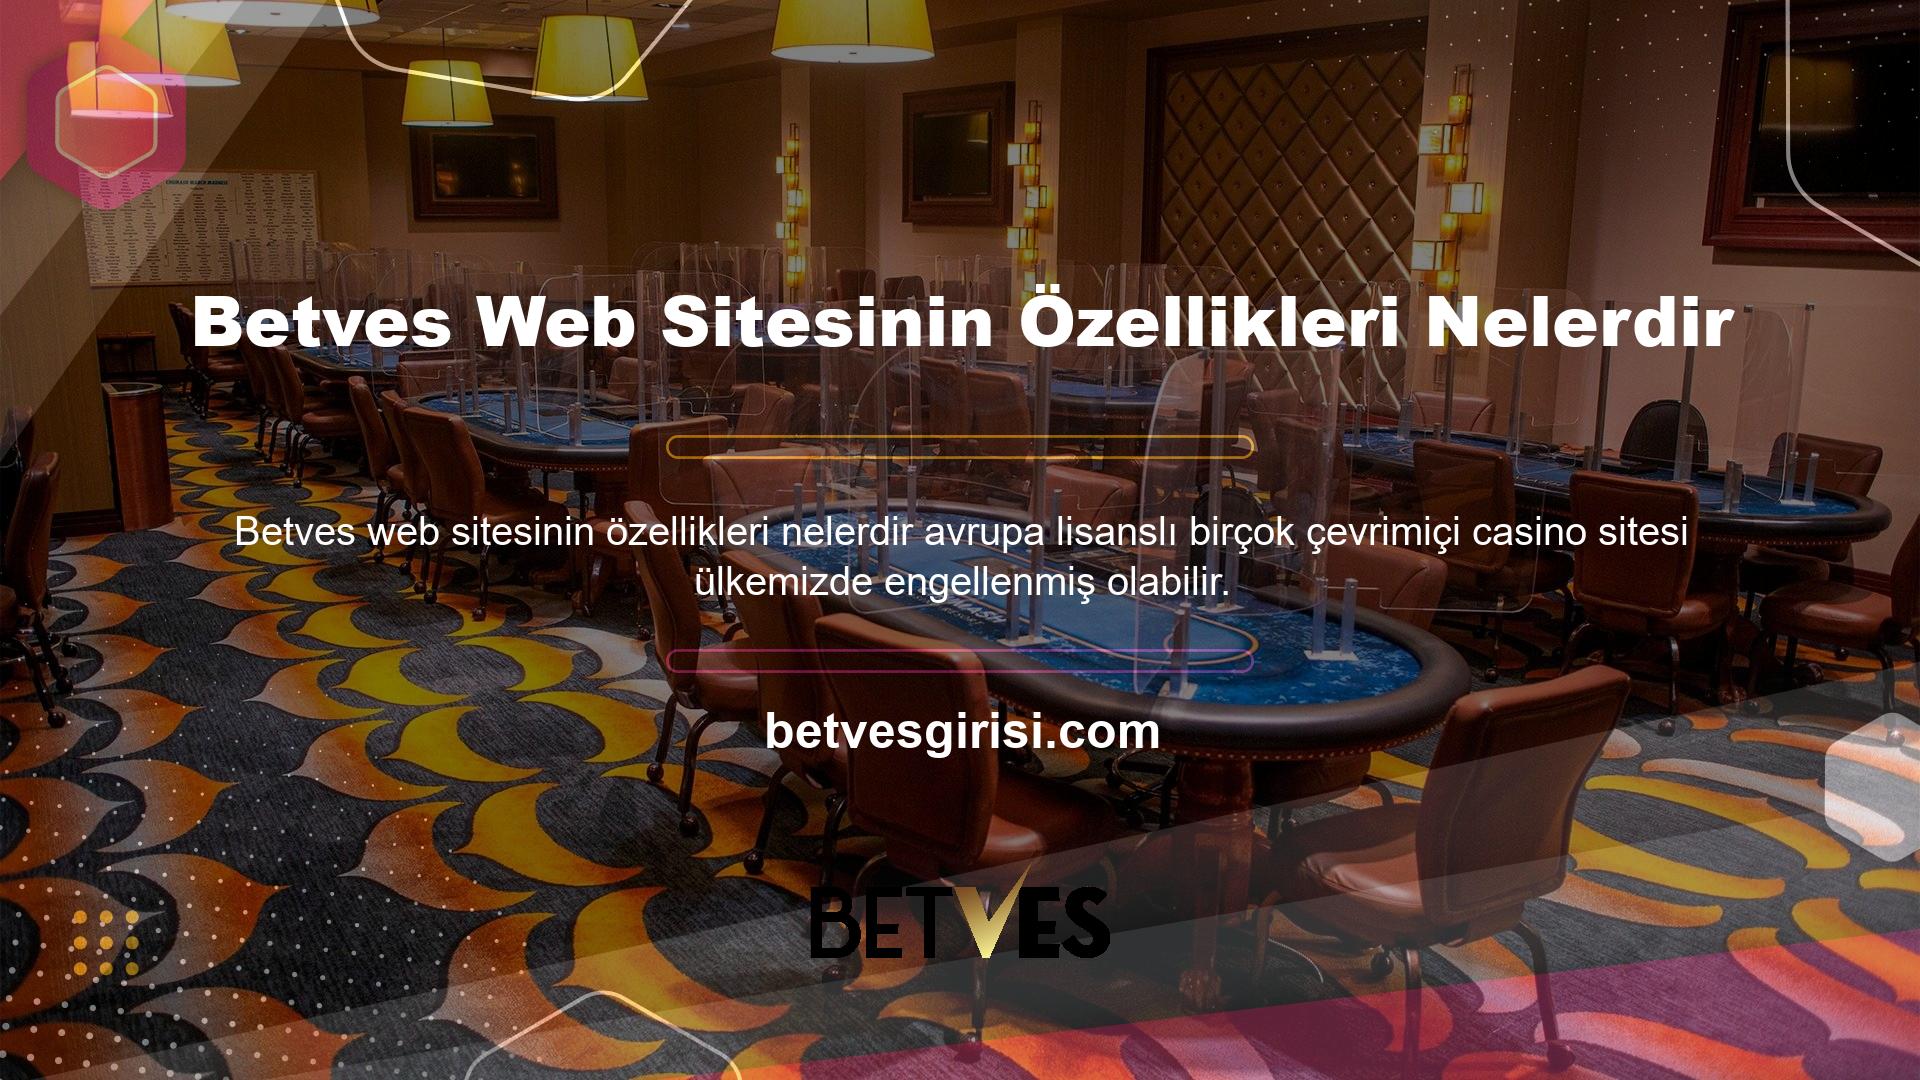 Diğer lisanslı Avrupa casino siteleri gibi Betves casino sitesi de alan adını değiştirerek bunu engellemektedir